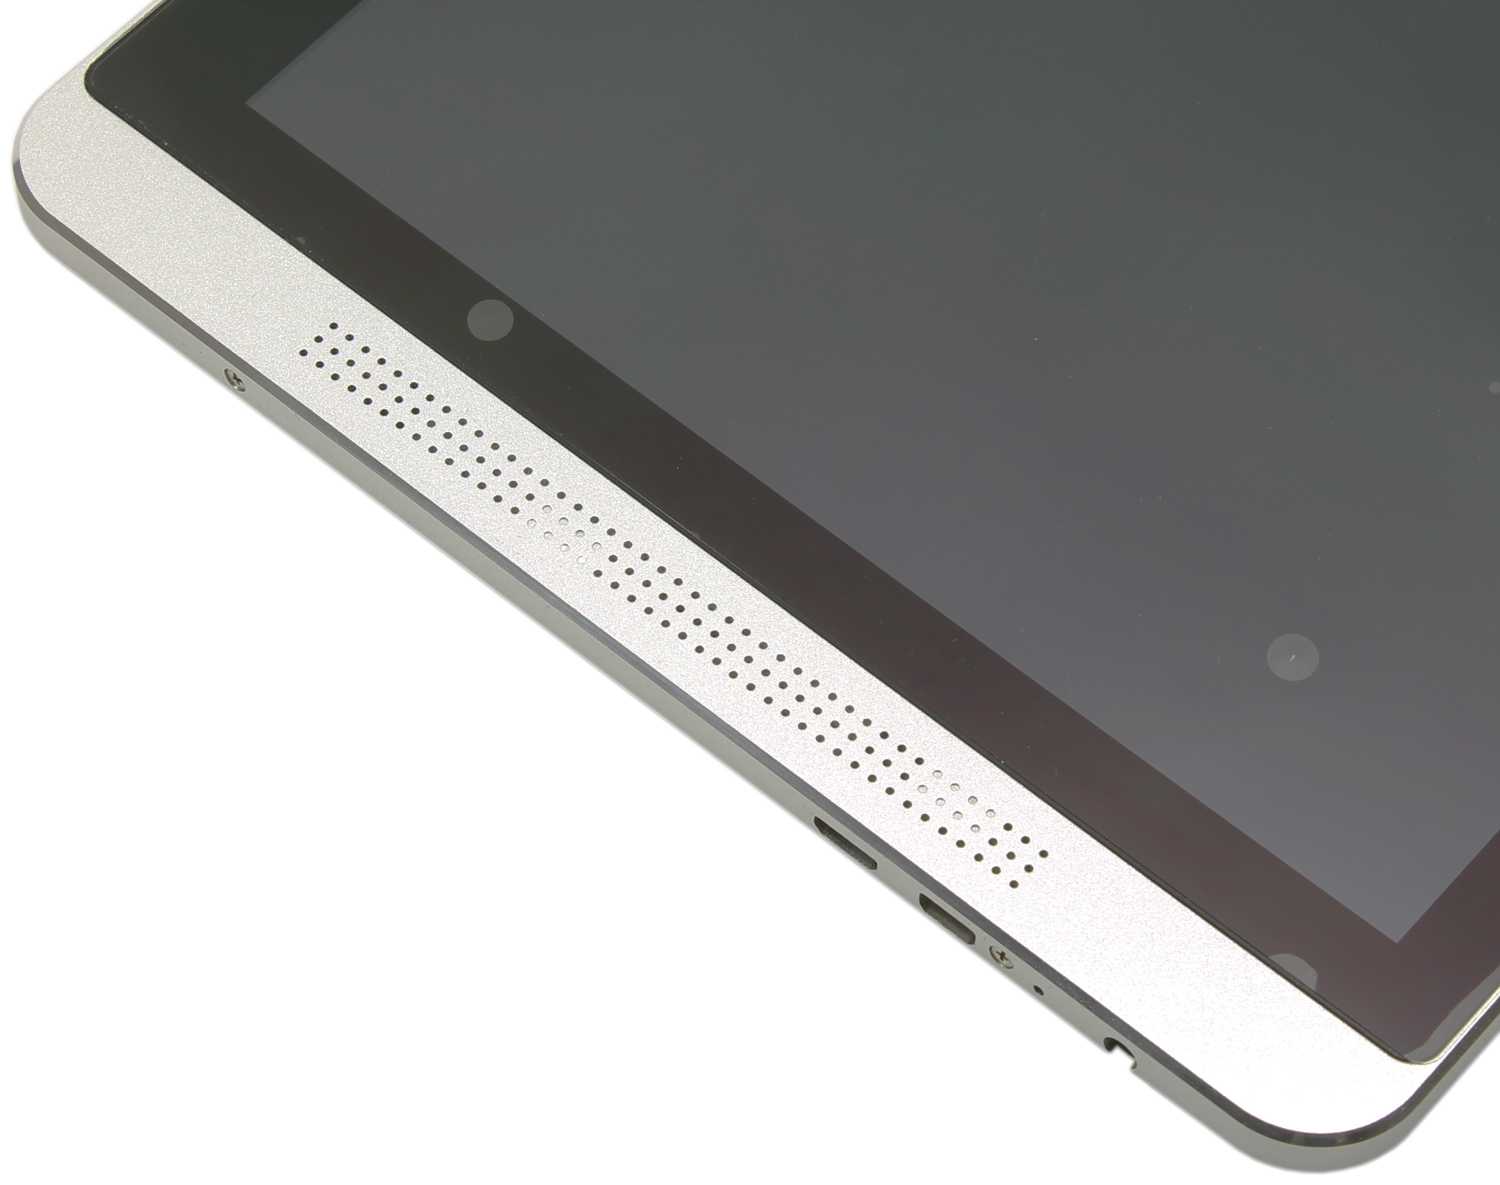 Предлагаем свежий обзор планшета Smarto 3GDi10 Разберем все плюсы и минусы внешнего вида данной модели, удобство использования, а также внутреннее содержание нового гаджета